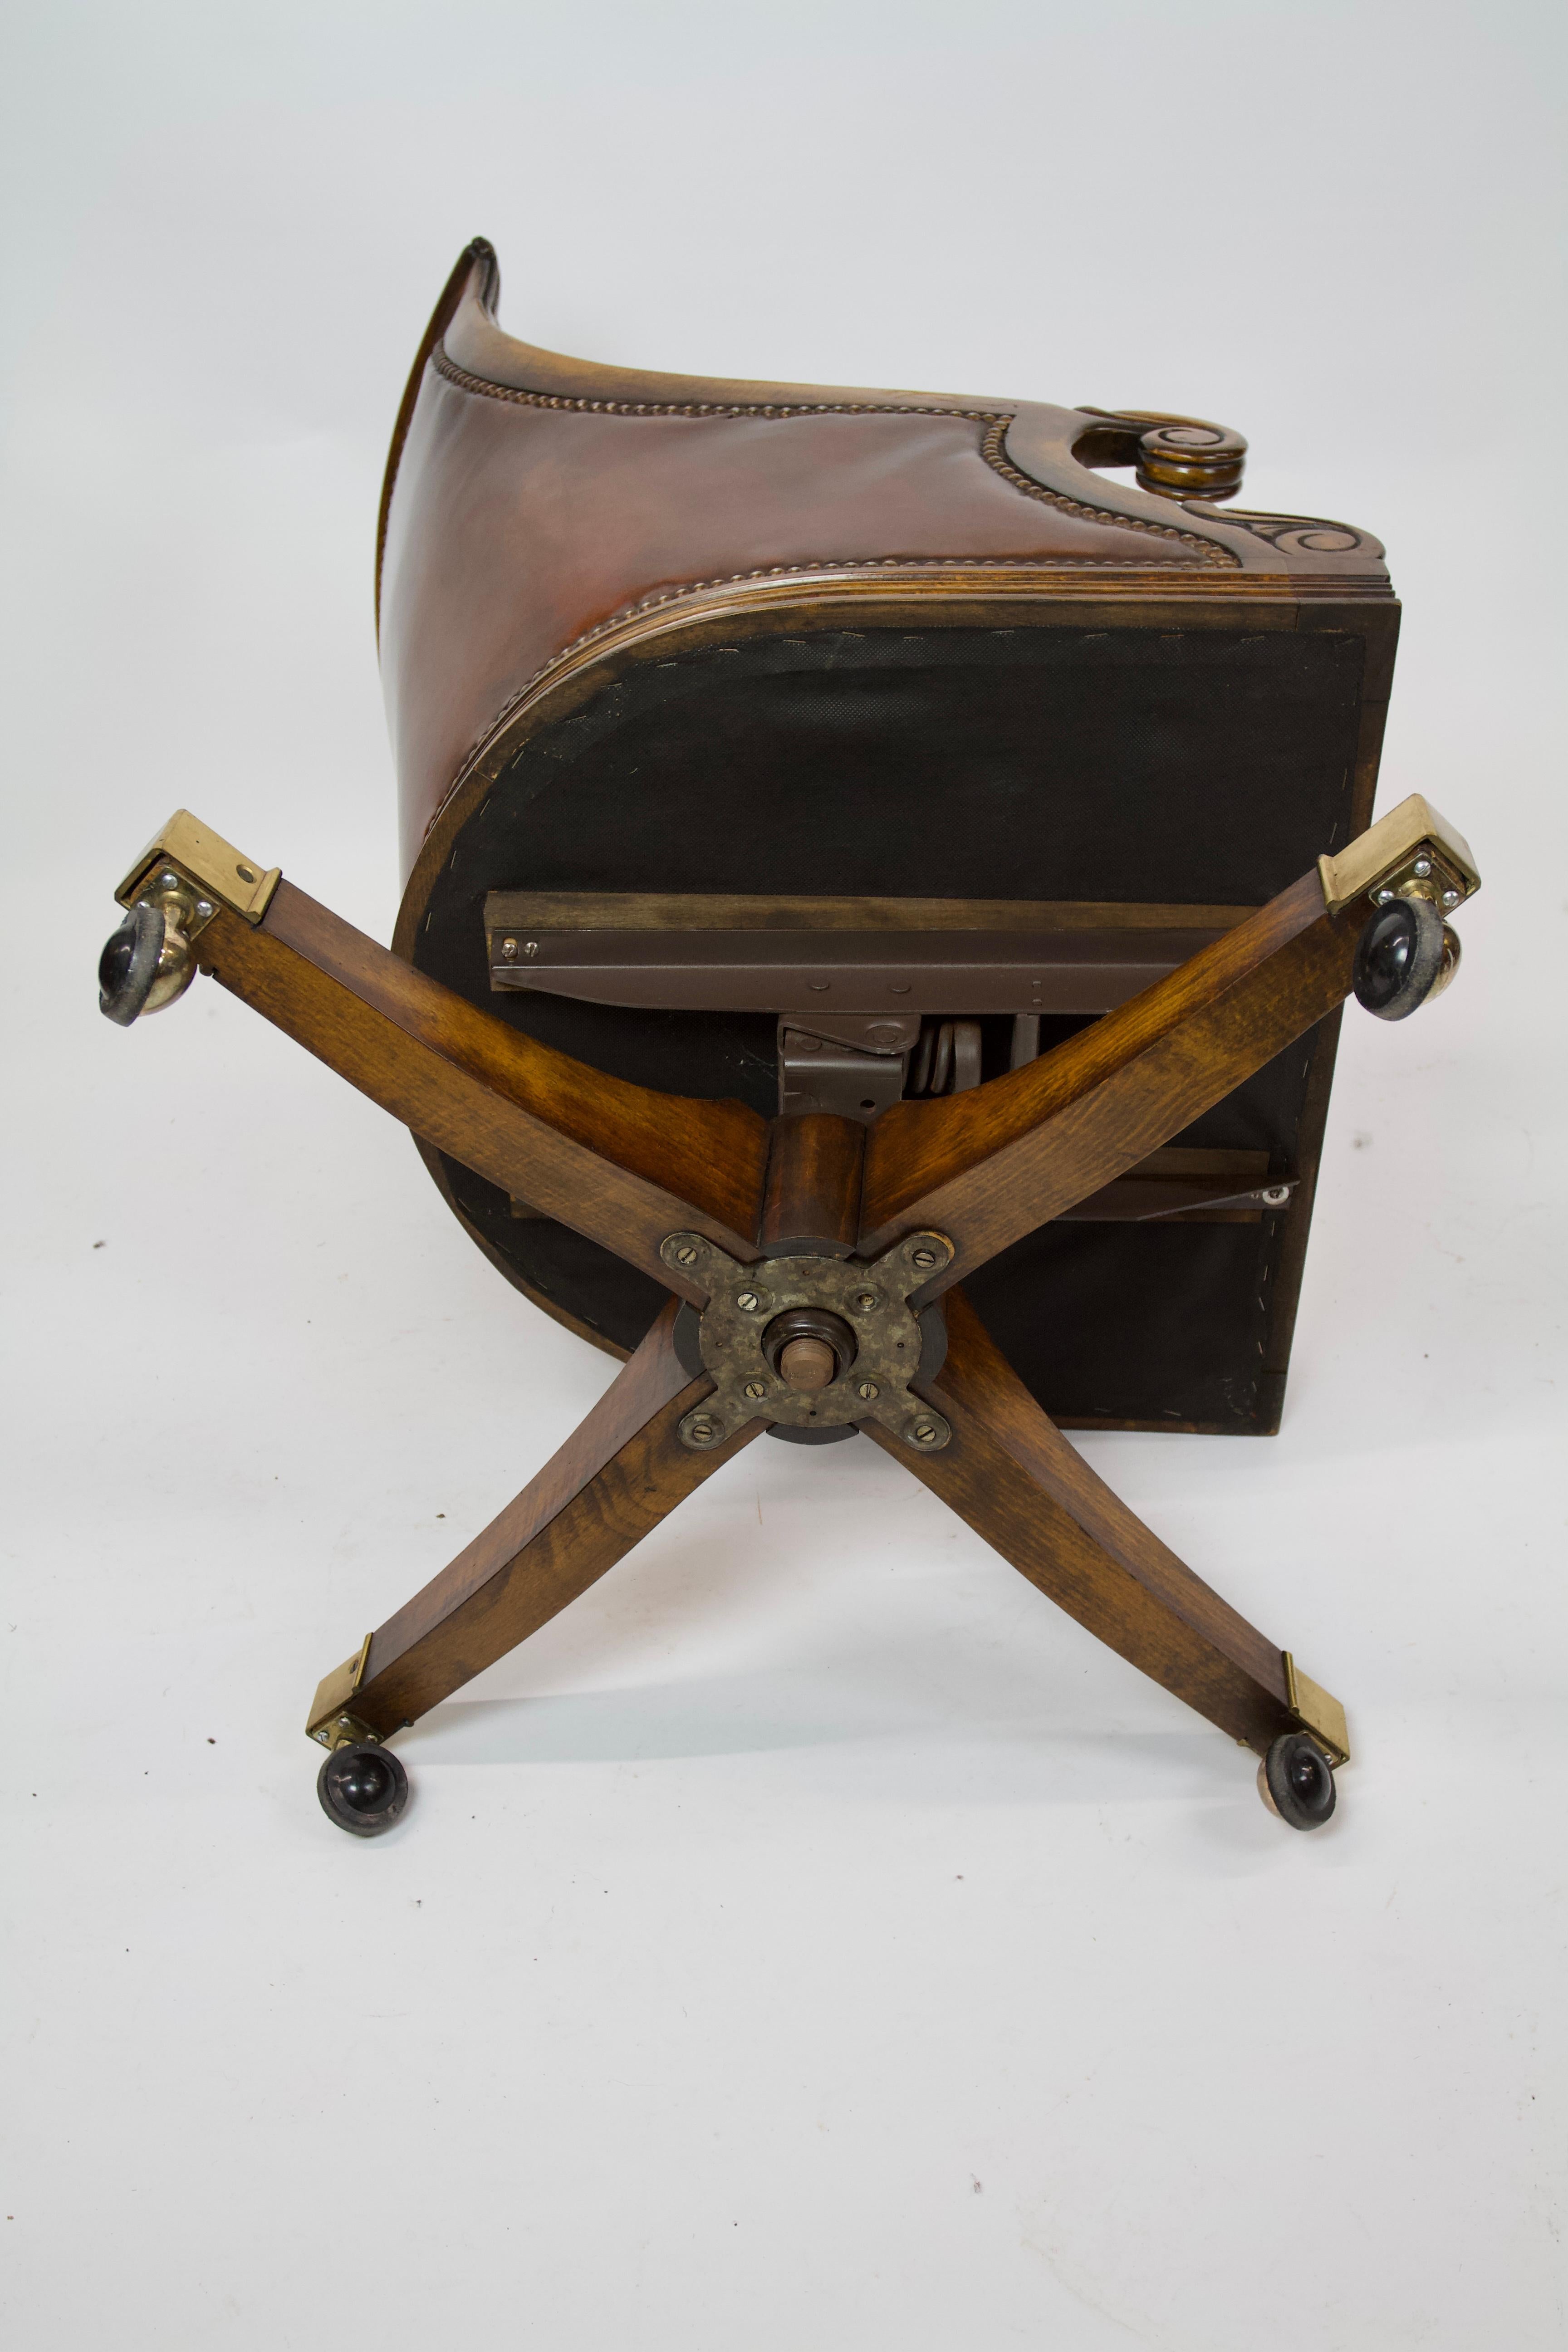 Chaise de bureau en acajou et cuir de qualité supérieure W1V sTyle, 
circa 1950s.
Cadre de présentation en acajou, avec détails sculptés de style W1V,
Revêtement en cuir couleur châtaigne, 
Action de pivotement et action de basculement vers